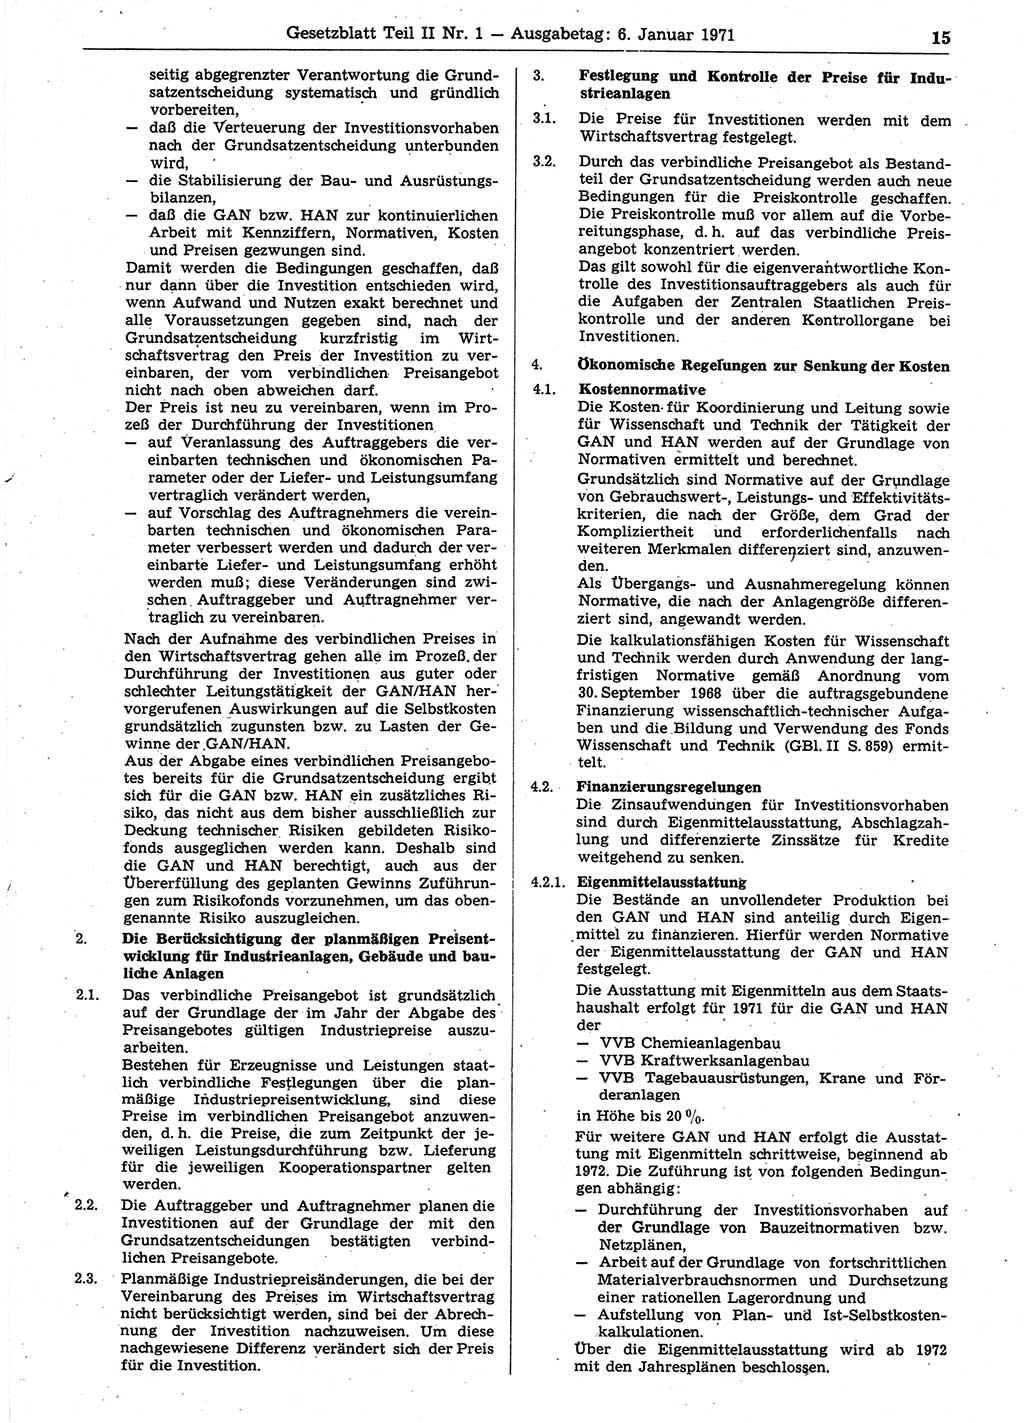 Gesetzblatt (GBl.) der Deutschen Demokratischen Republik (DDR) Teil ⅠⅠ 1971, Seite 15 (GBl. DDR ⅠⅠ 1971, S. 15)